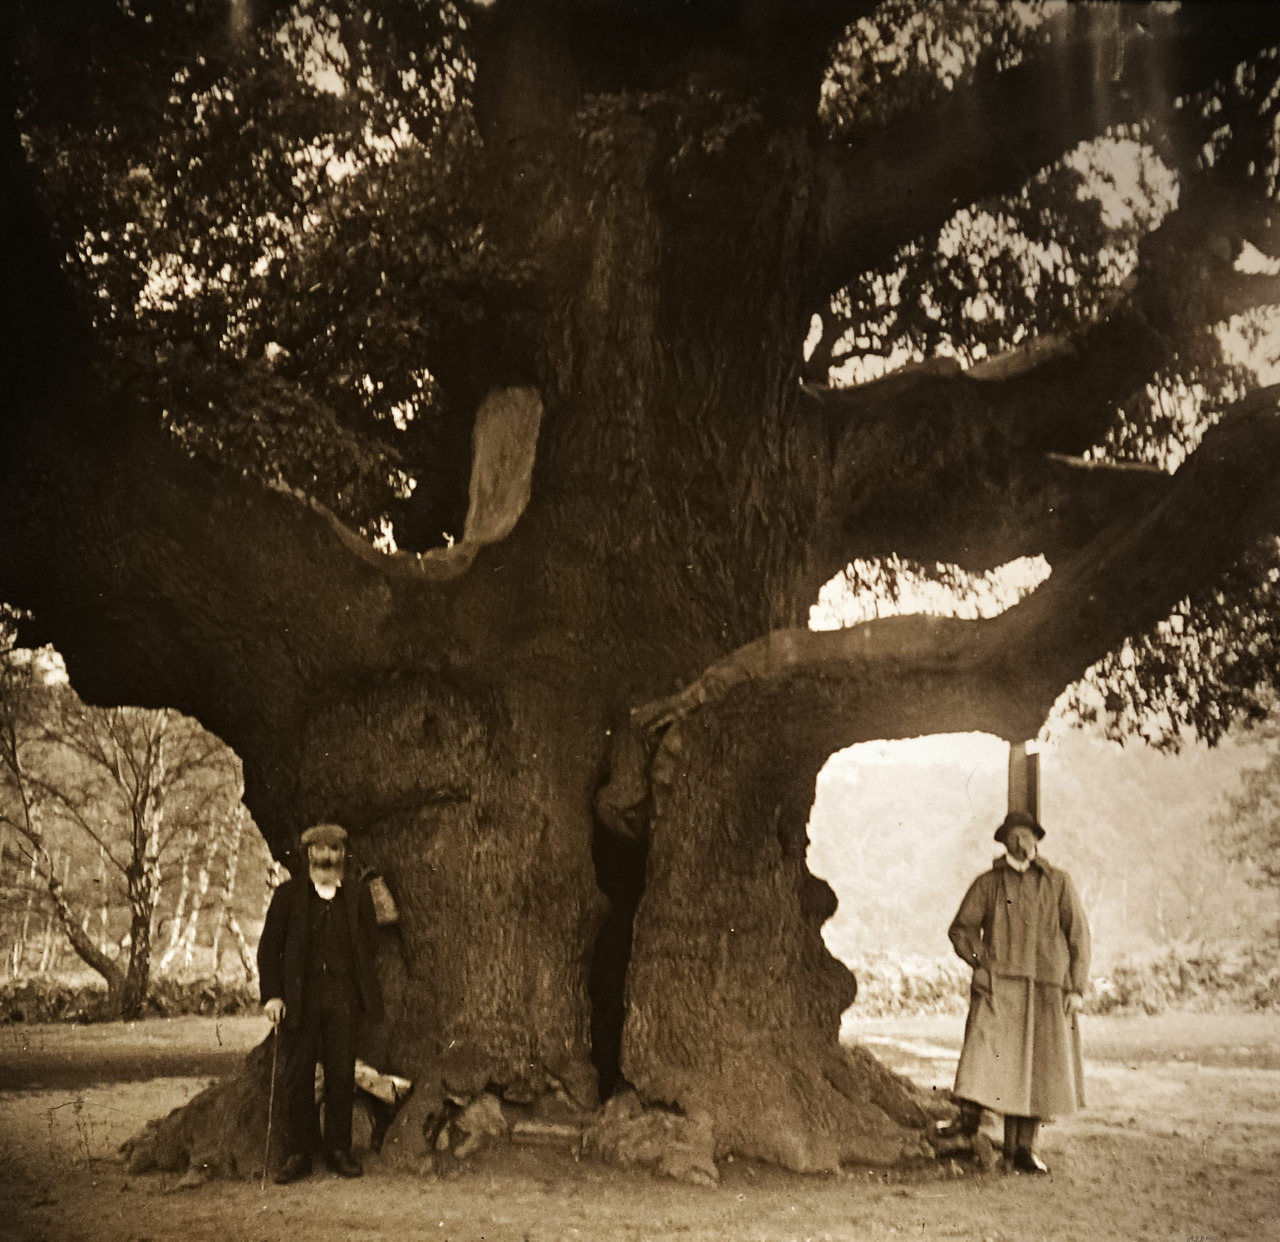 Robin Hoodâs Oak
Sherwood Forest, England
1908
Source: Andy Brill / flickr